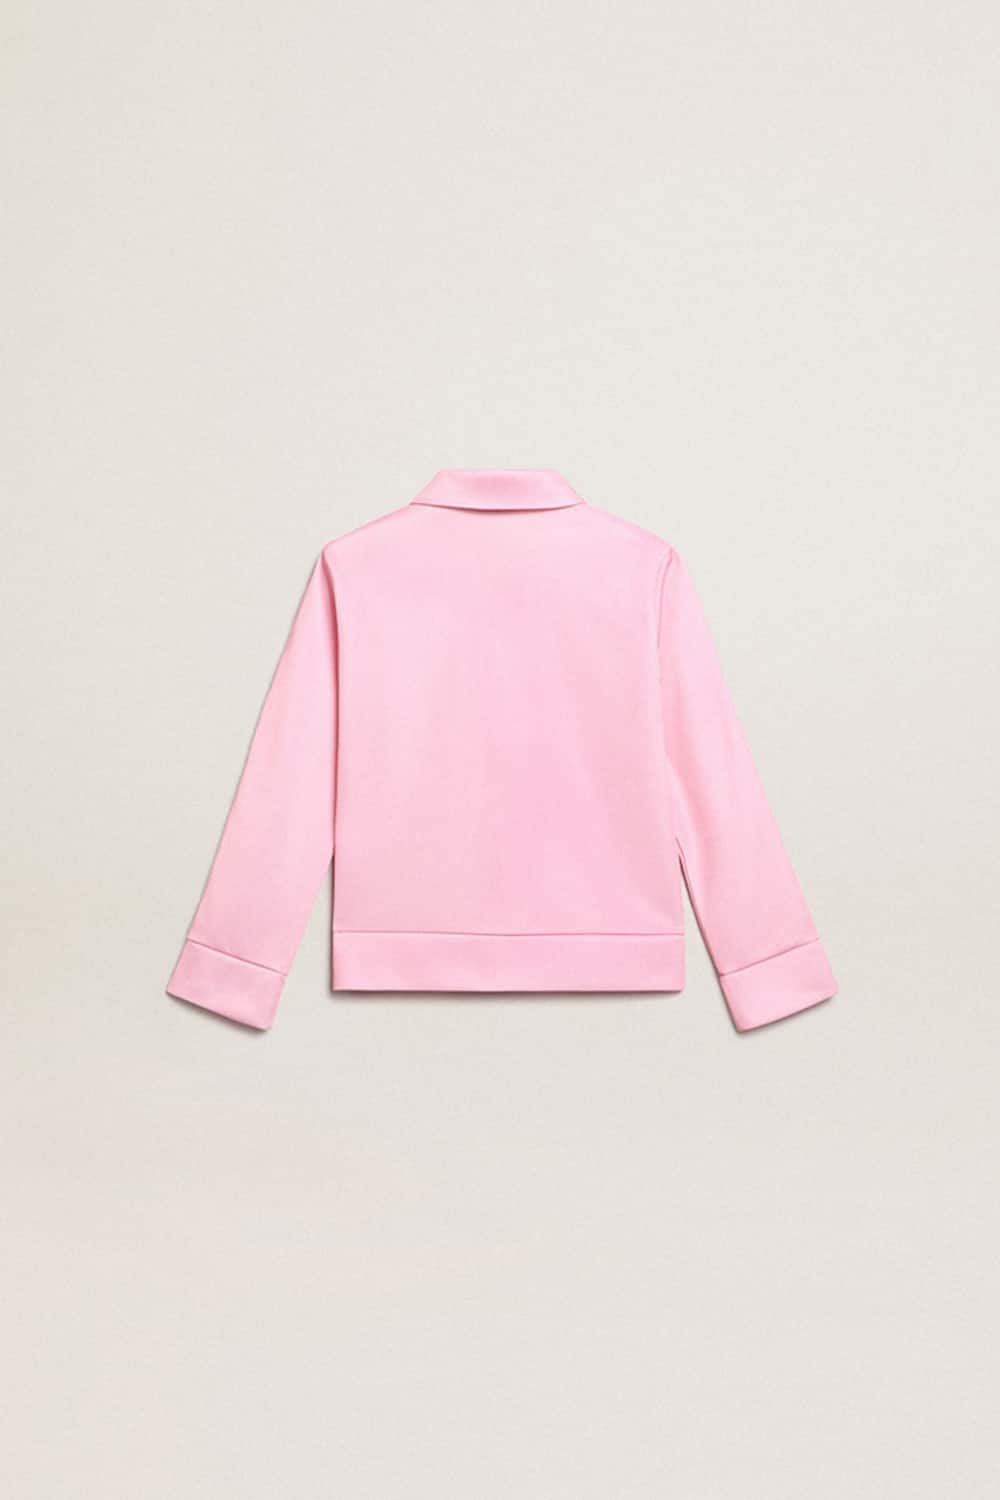 Golden Goose - Sweat-shirt rose avec fermeture à glissière, bande blanche et étoiles roses in 